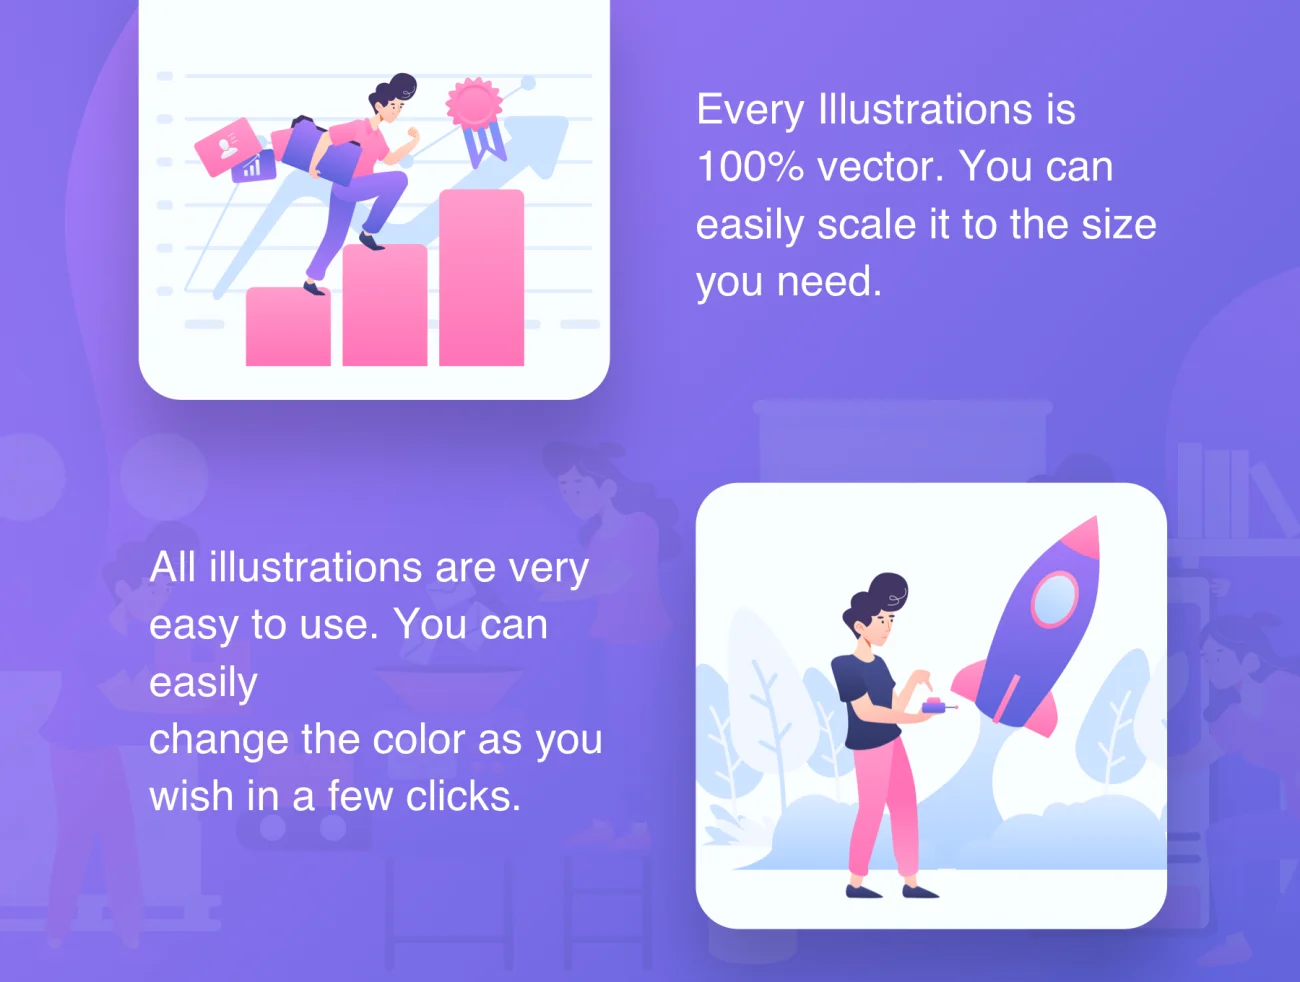 Start Up Illustration Kit 易用可定制多格式启动插图套件-人物插画、场景插画、学习生活、插画、插画风格、概念创意、线条手绘、趣味漫画-到位啦UI